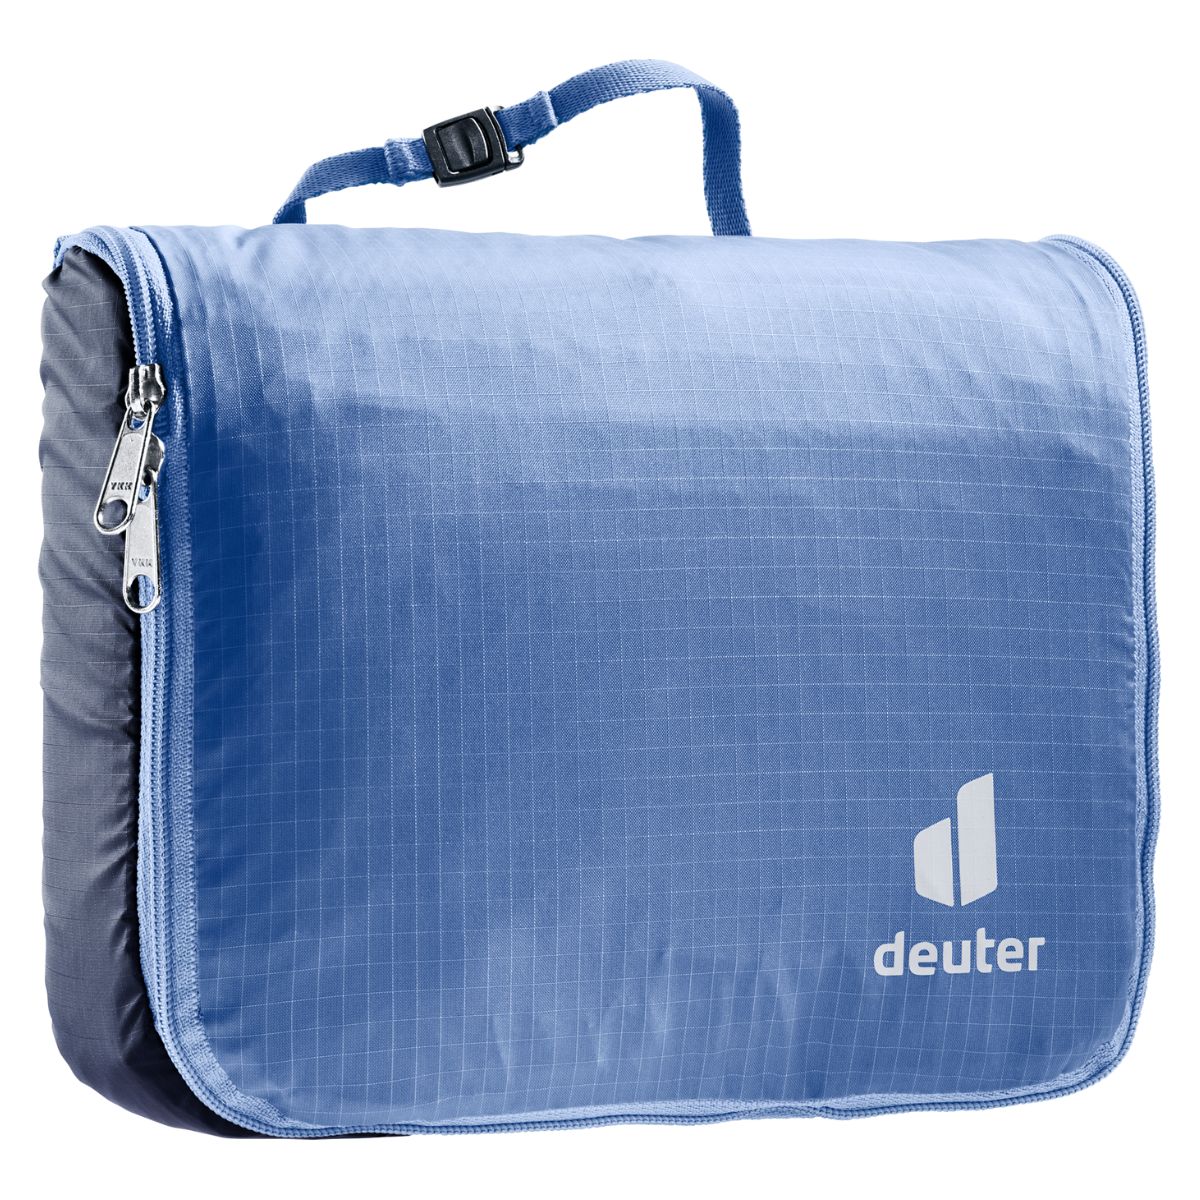 Deuter Wash Bag